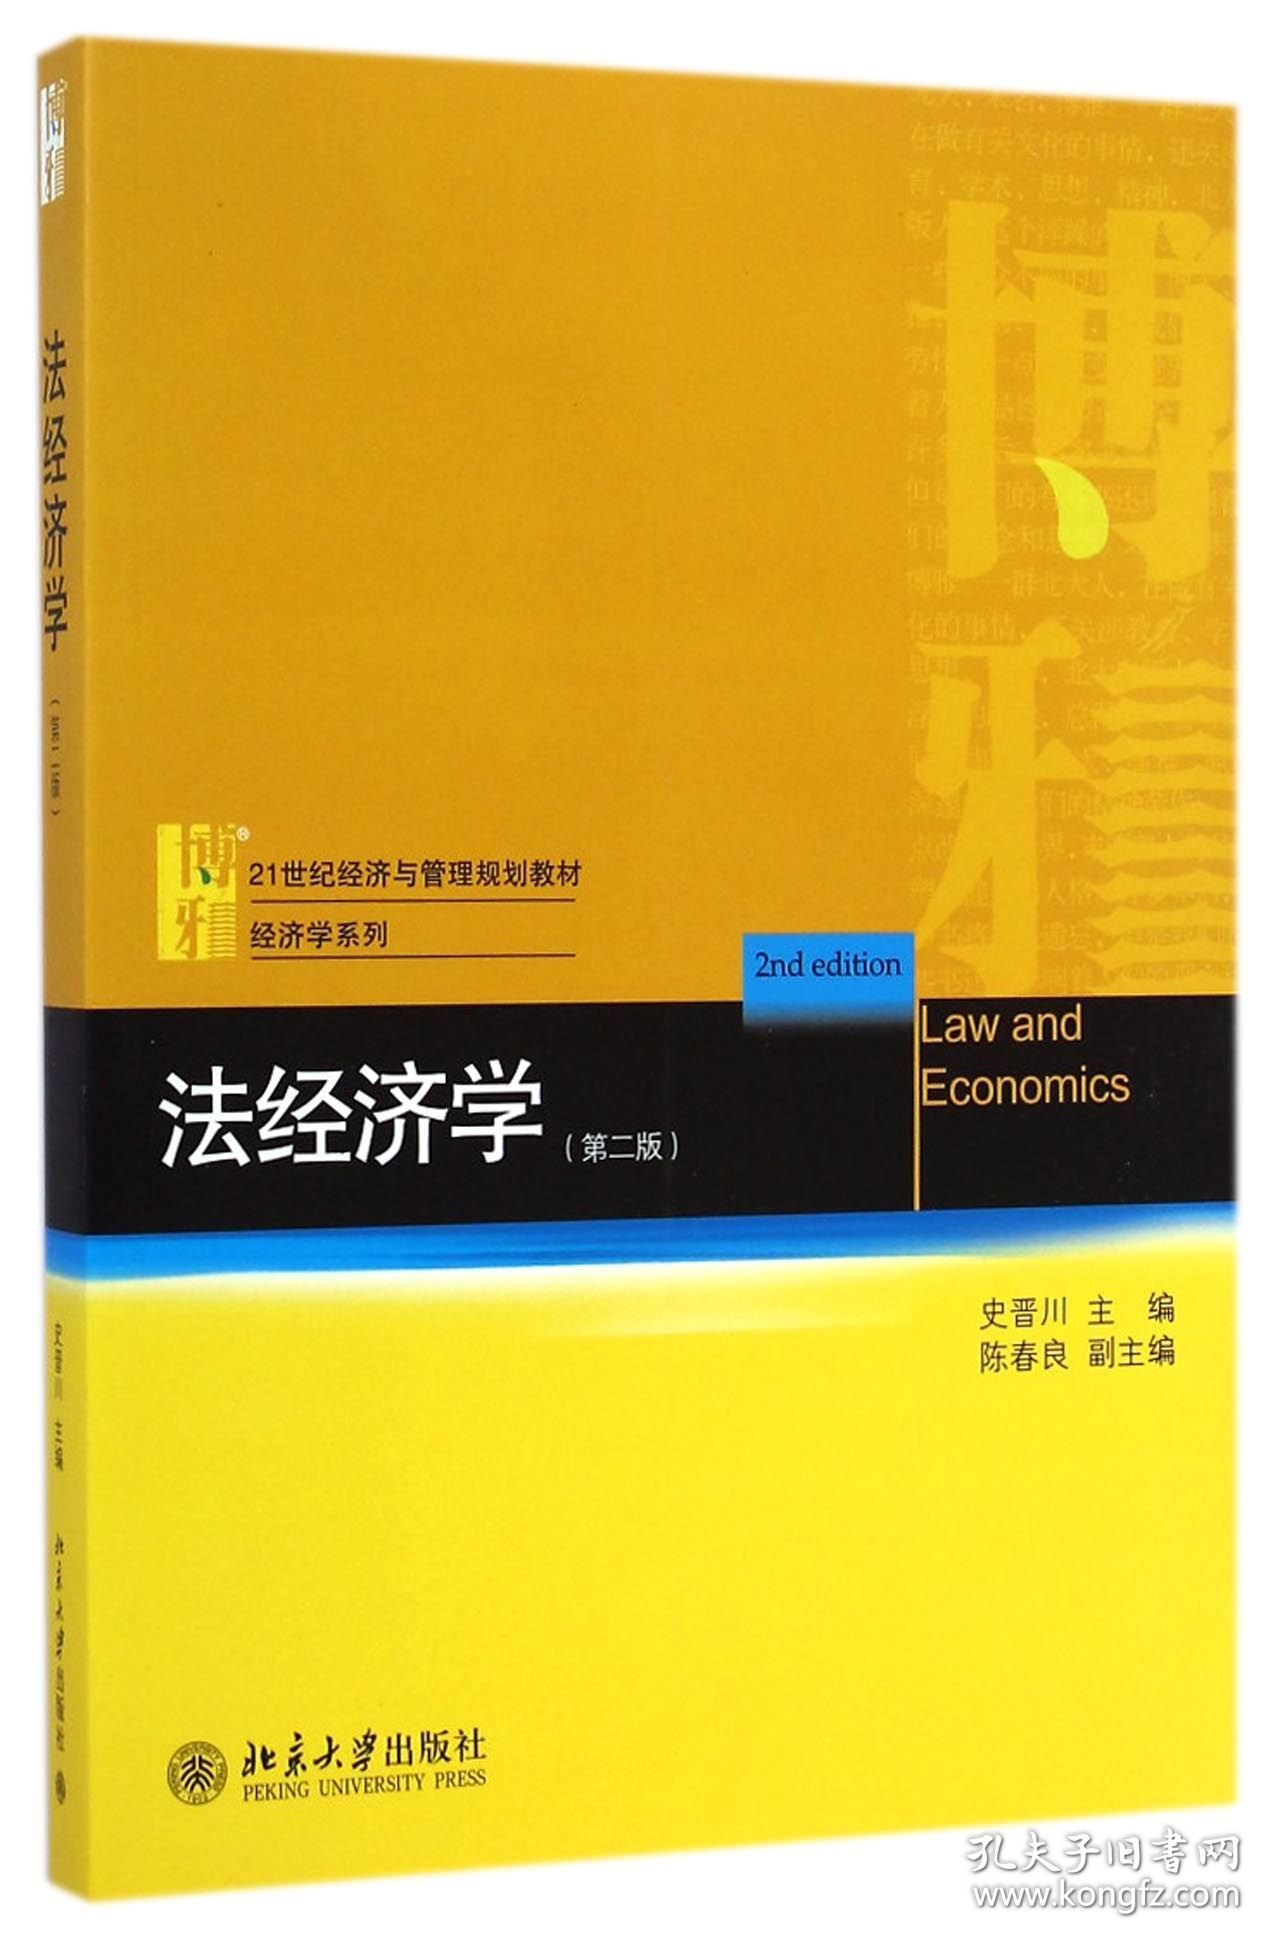 法经济学(第2版21世纪经济与管理规划教材)/经济学系列 9787301249208